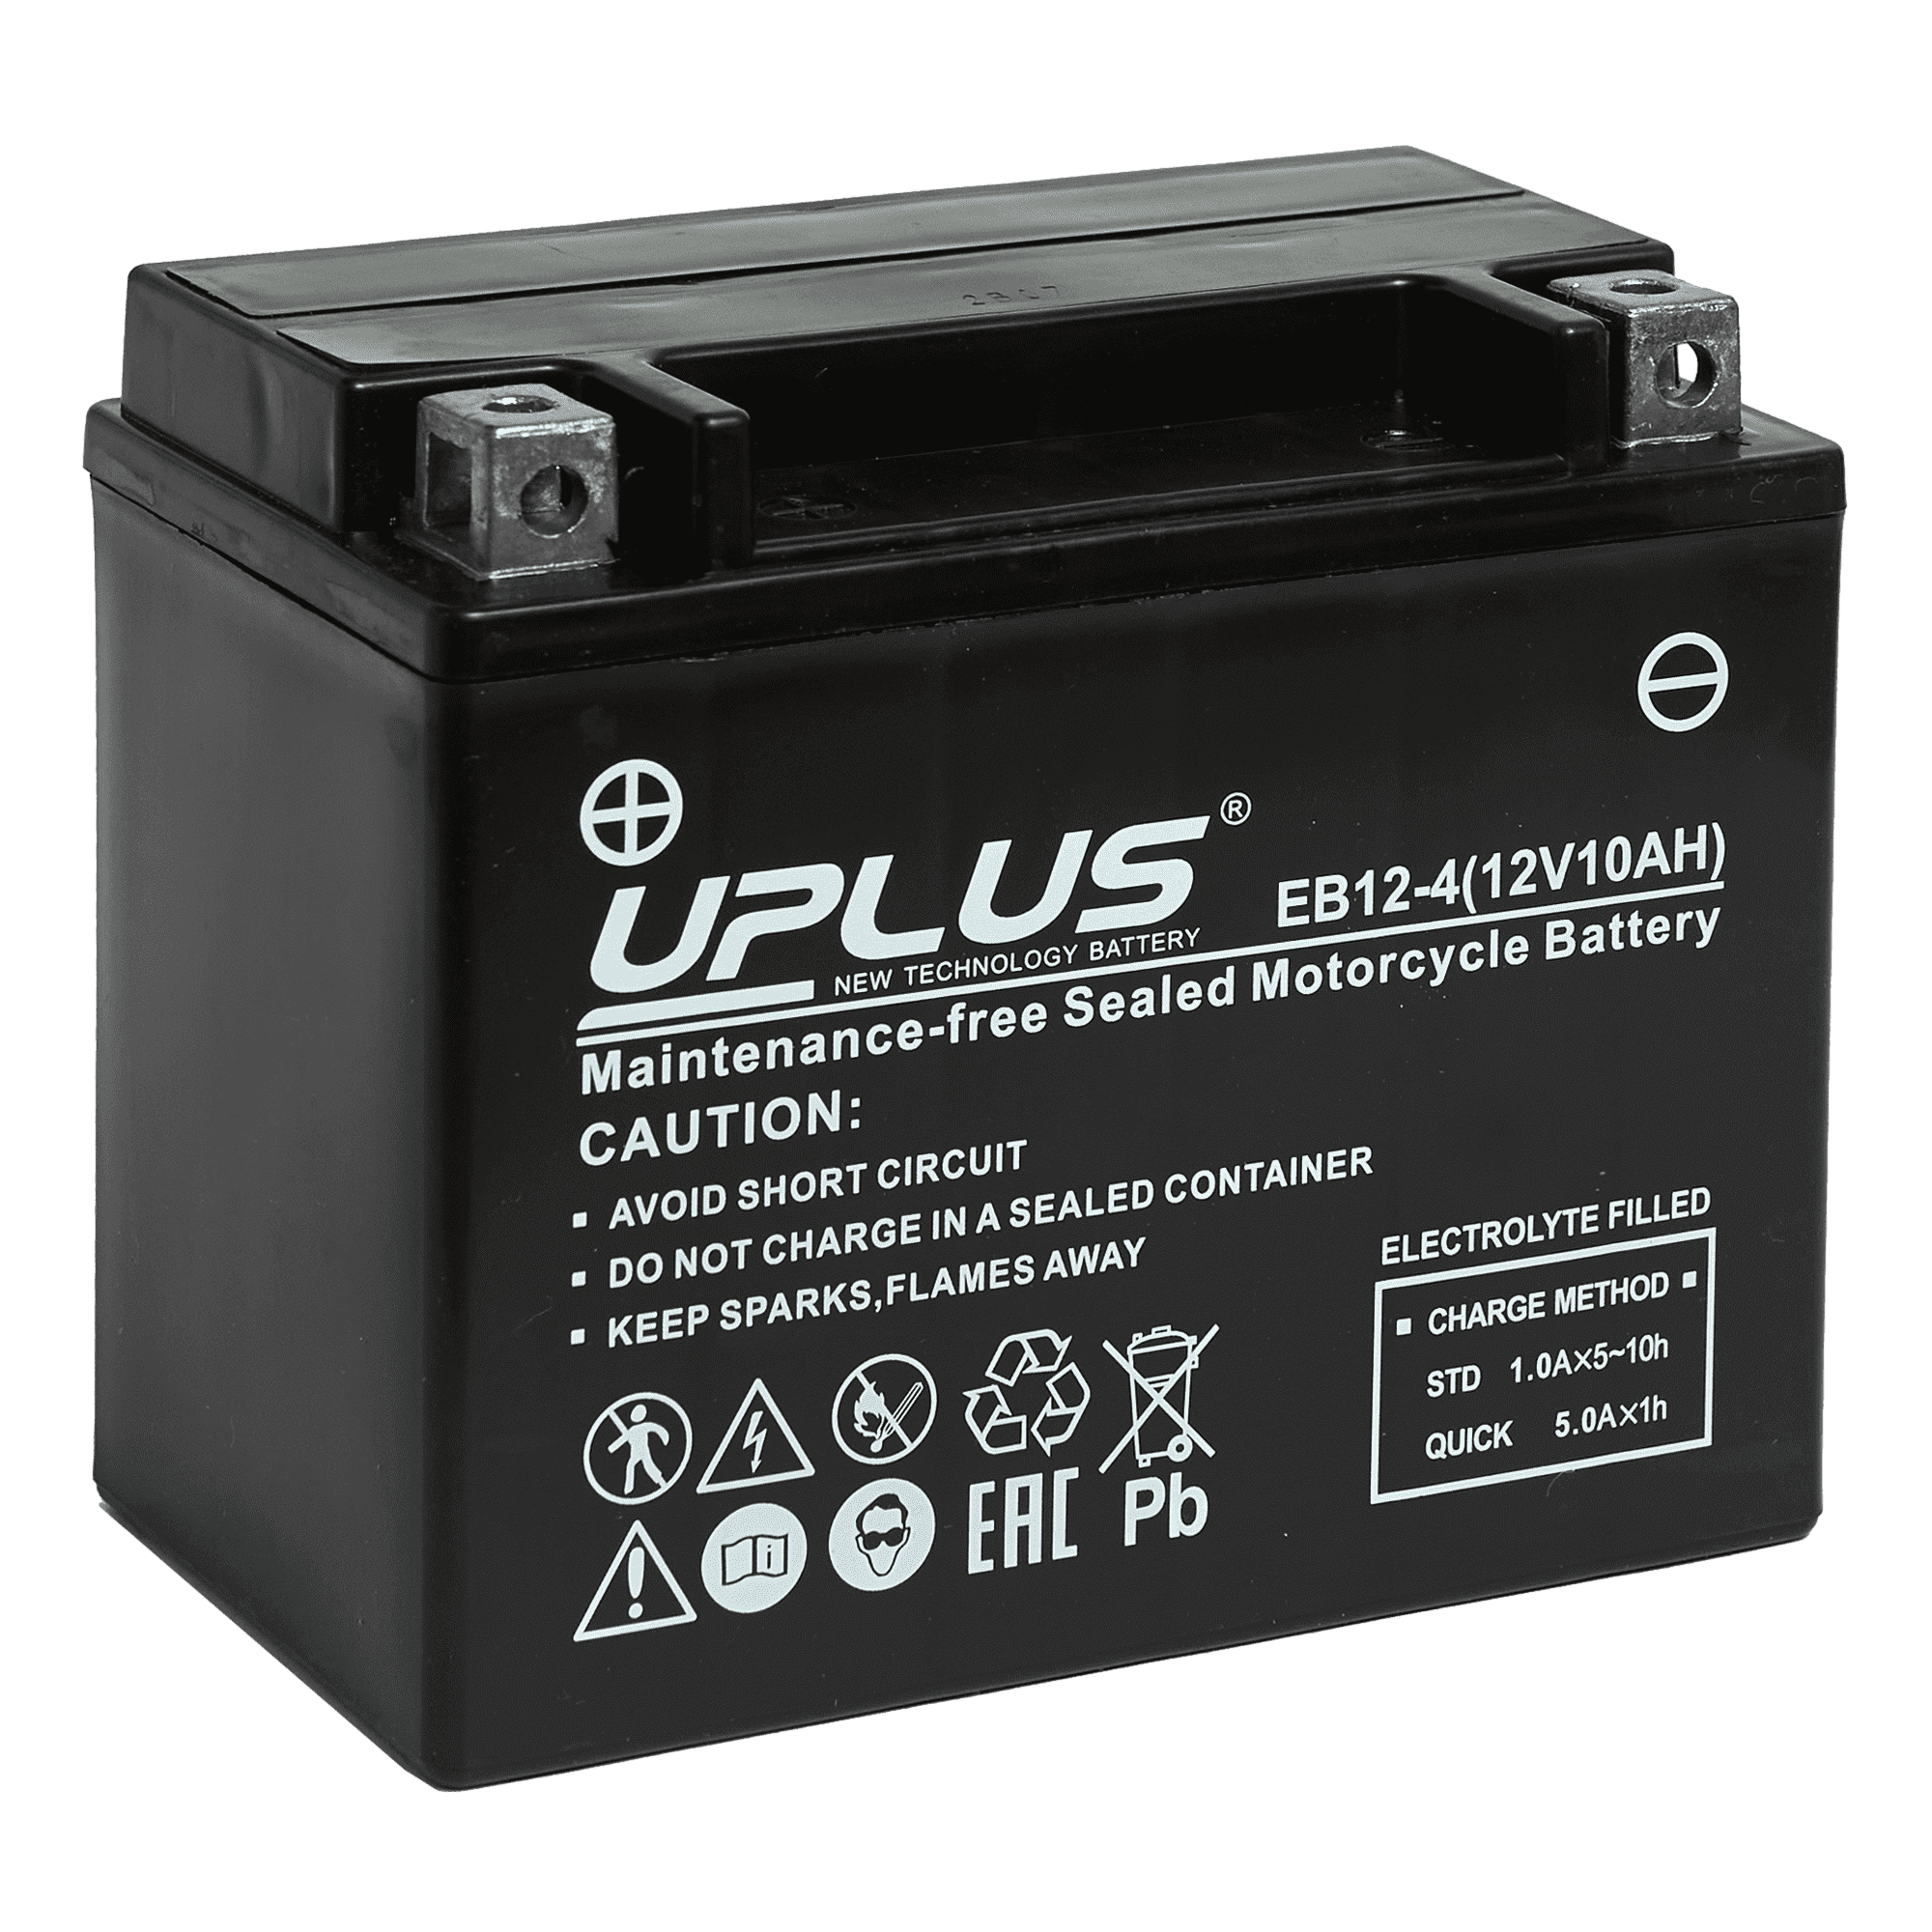 Мотоциклетная аккумуляторная батарея UPLUS High Performance  EB12-4, 10 Ач, 1/0